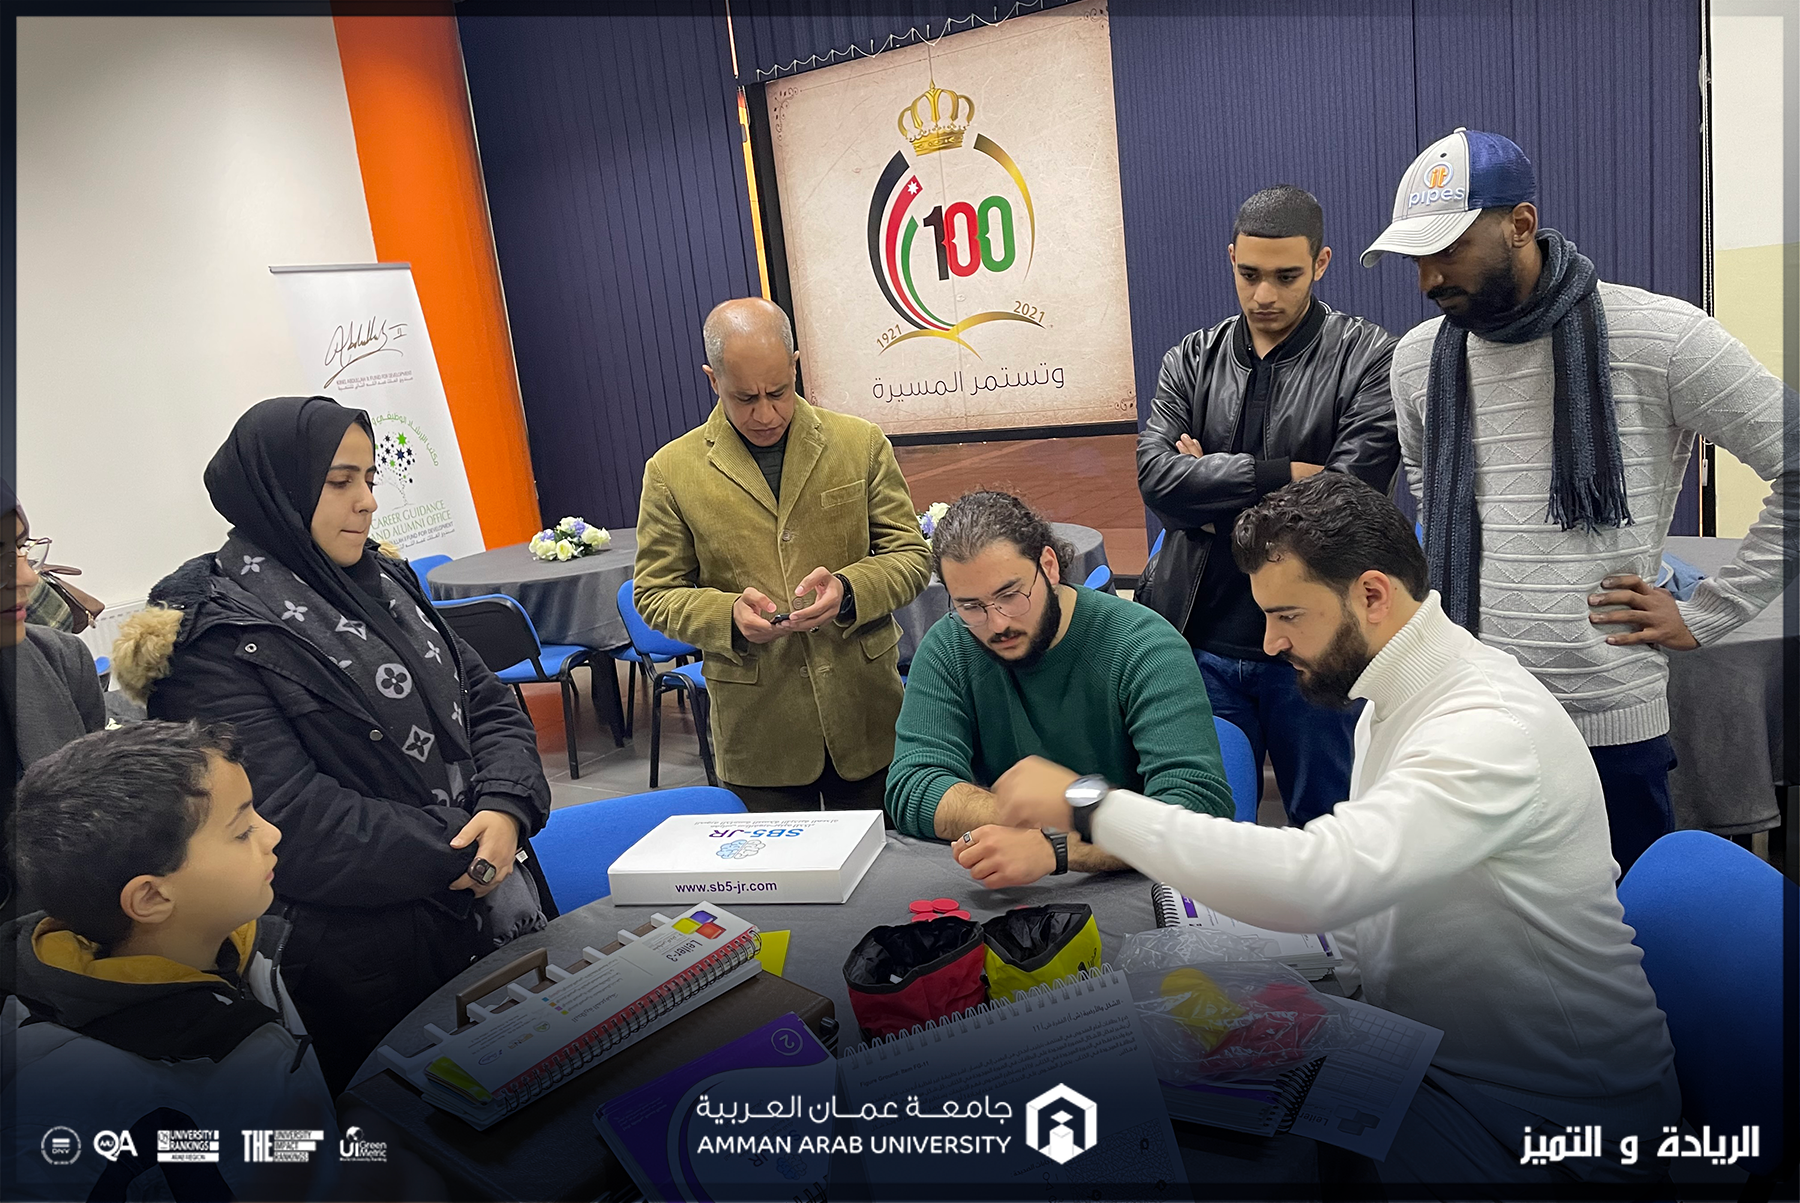 ورشة "مقاييس واختبارات الذكاء" لطلبة جامعة عمان العربية